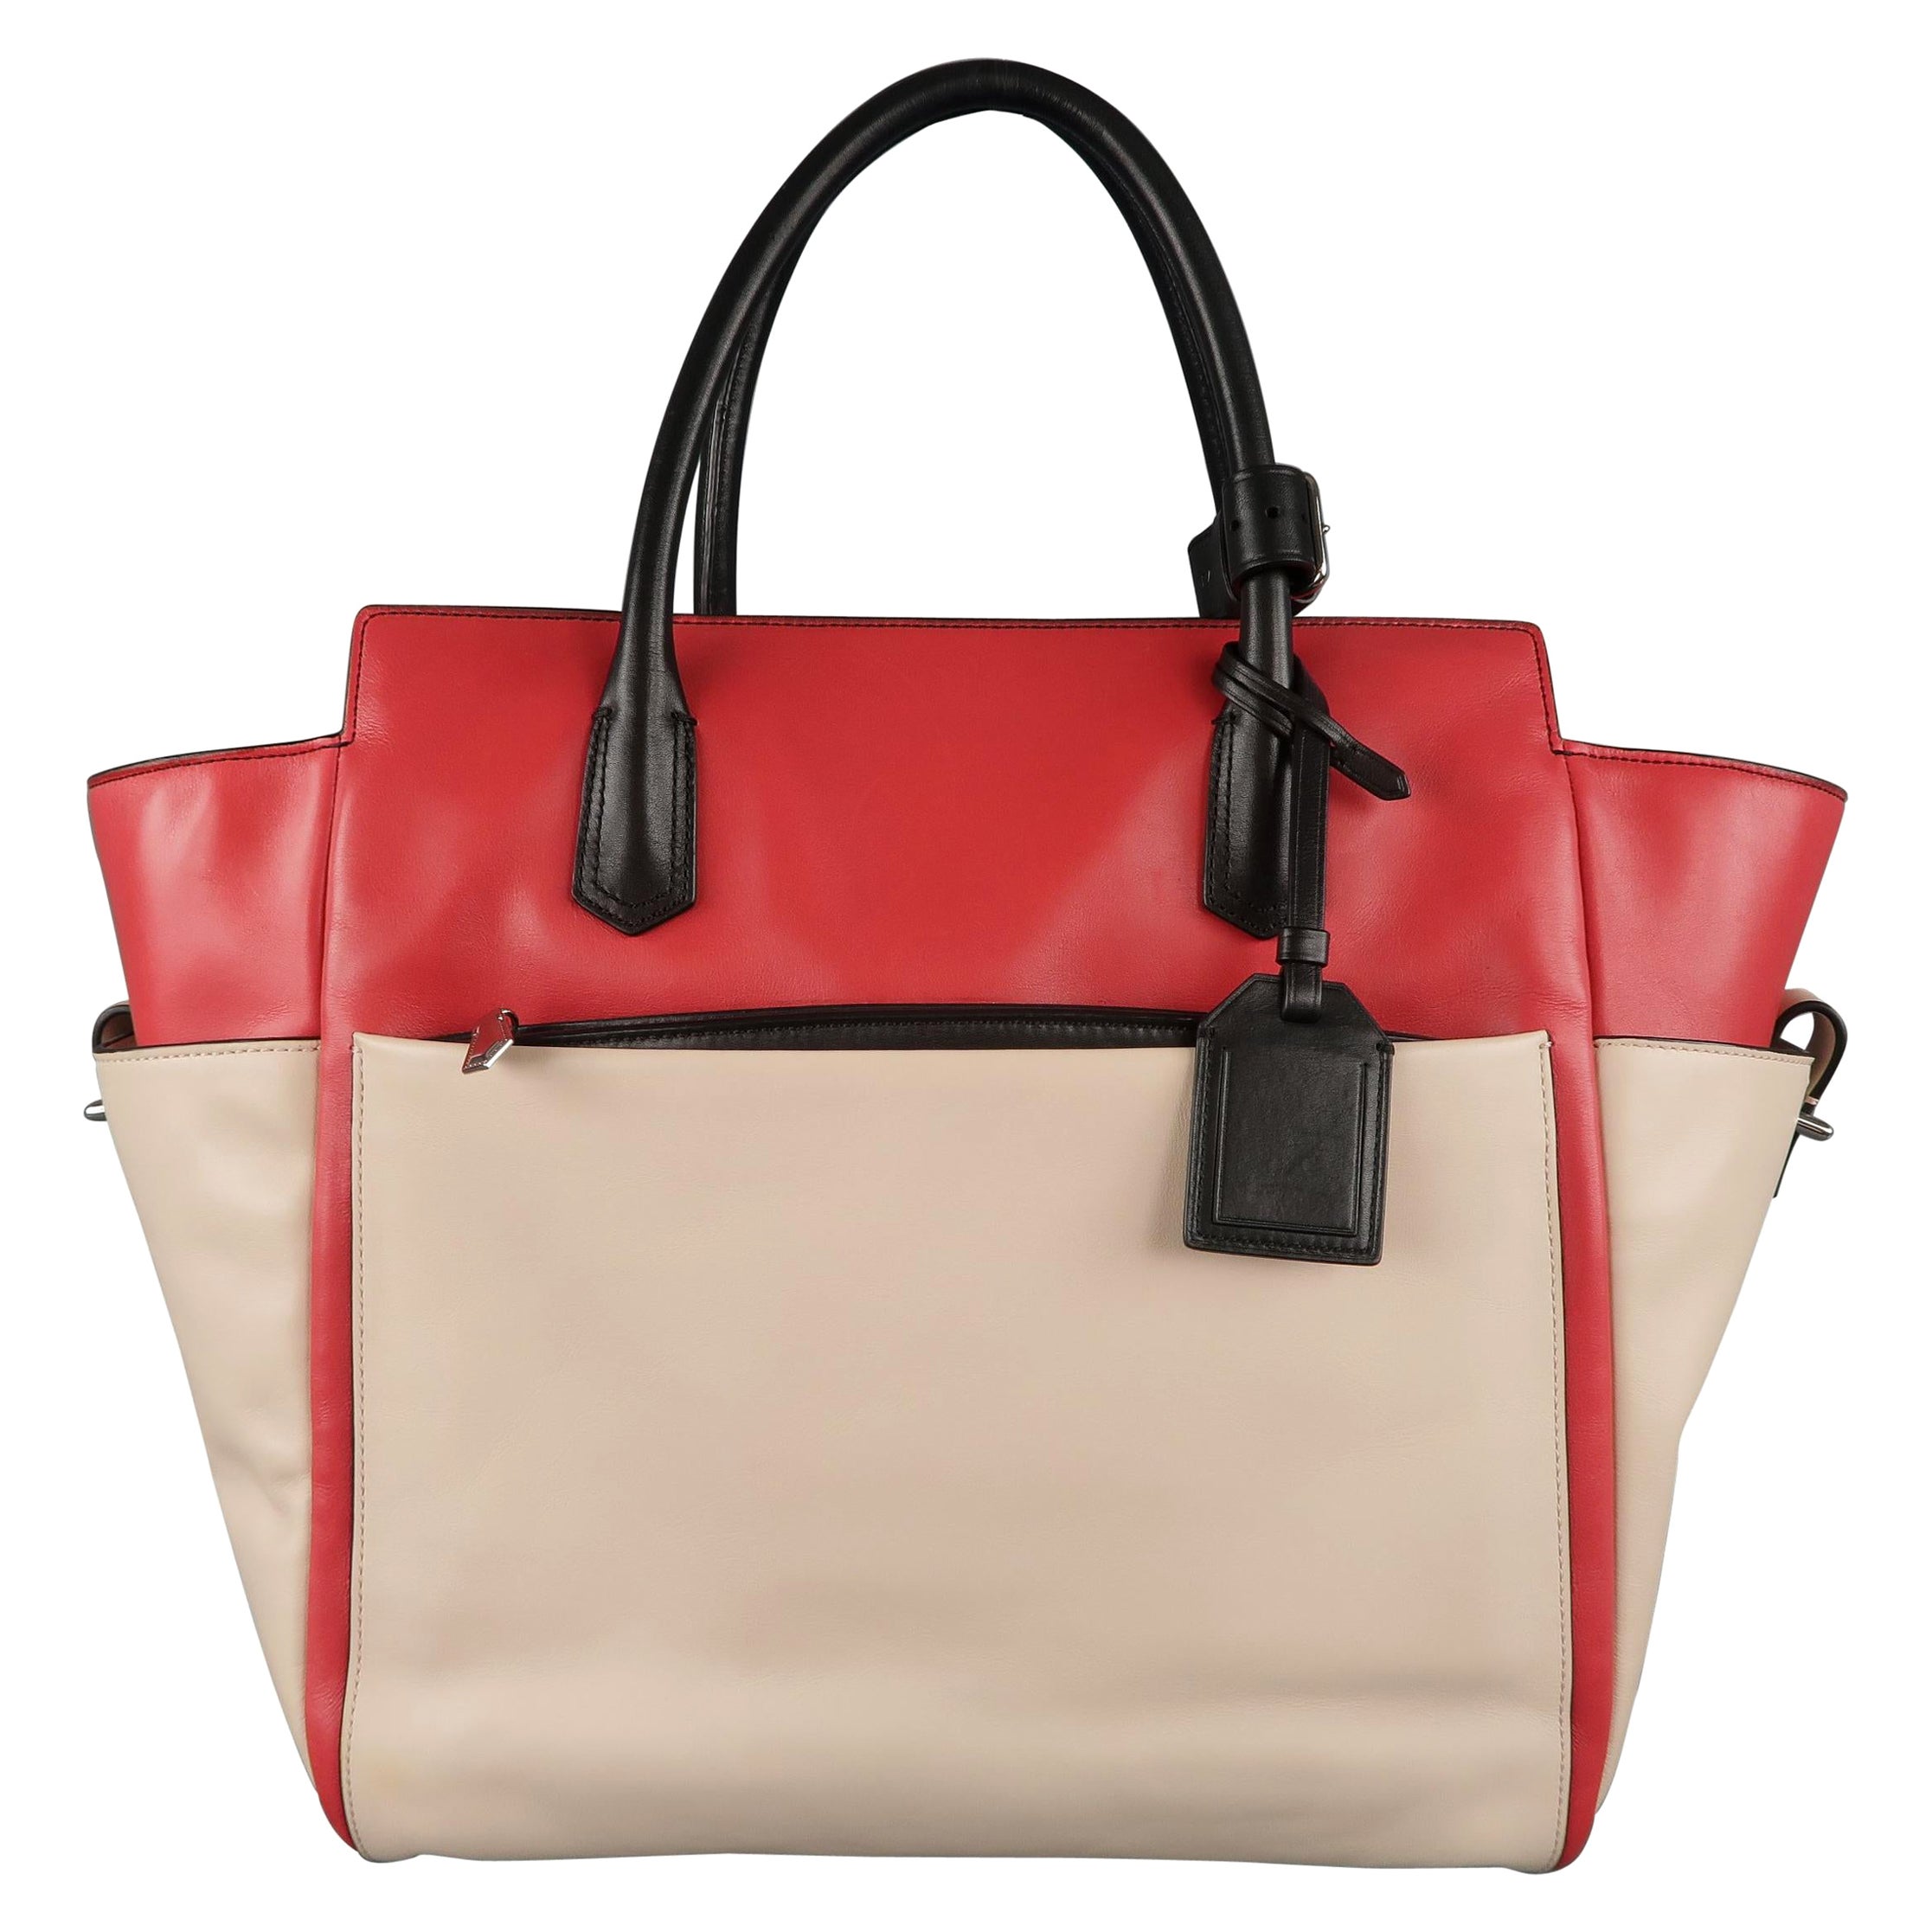 REED KRAKOFF Red Black & Light Pink Leather Tote Handbag Bag